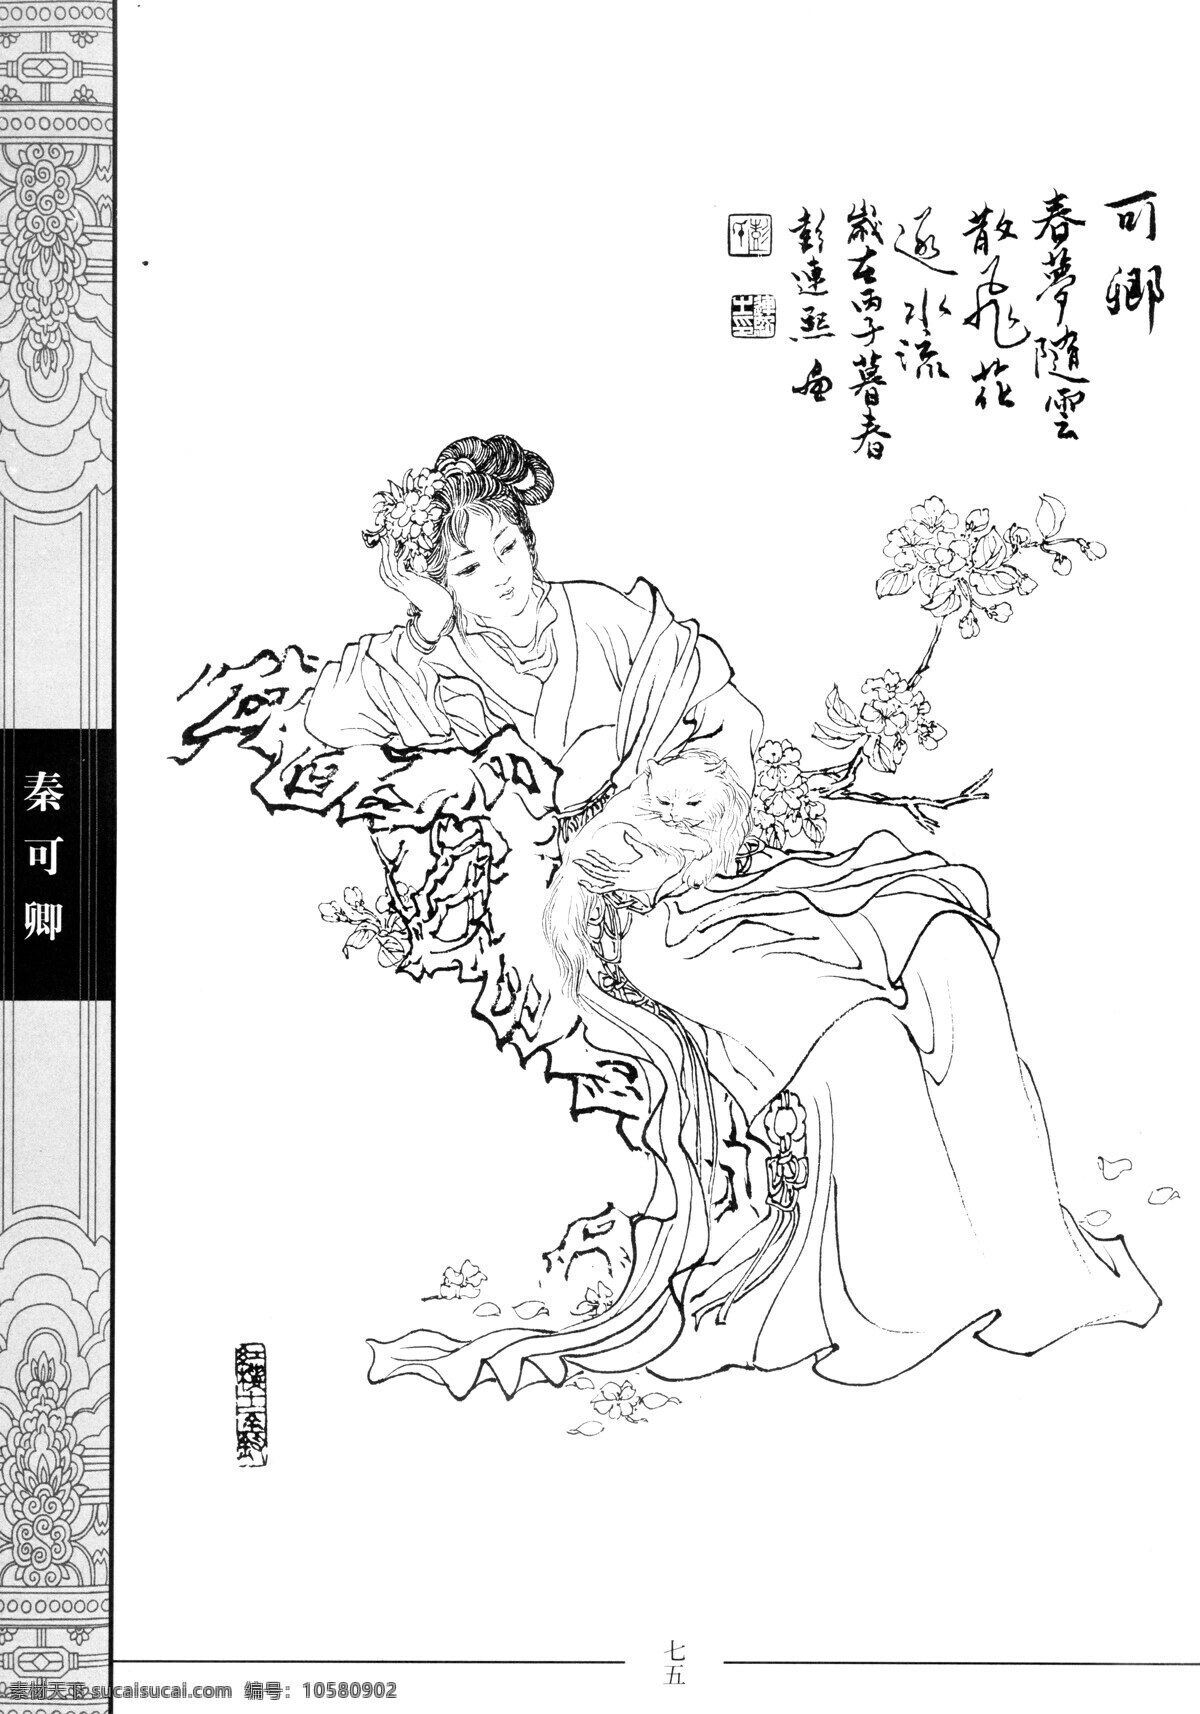 中国仕女百图 秦可卿 仕女 彭连熙 线描 扫描 绘画书法 文化艺术